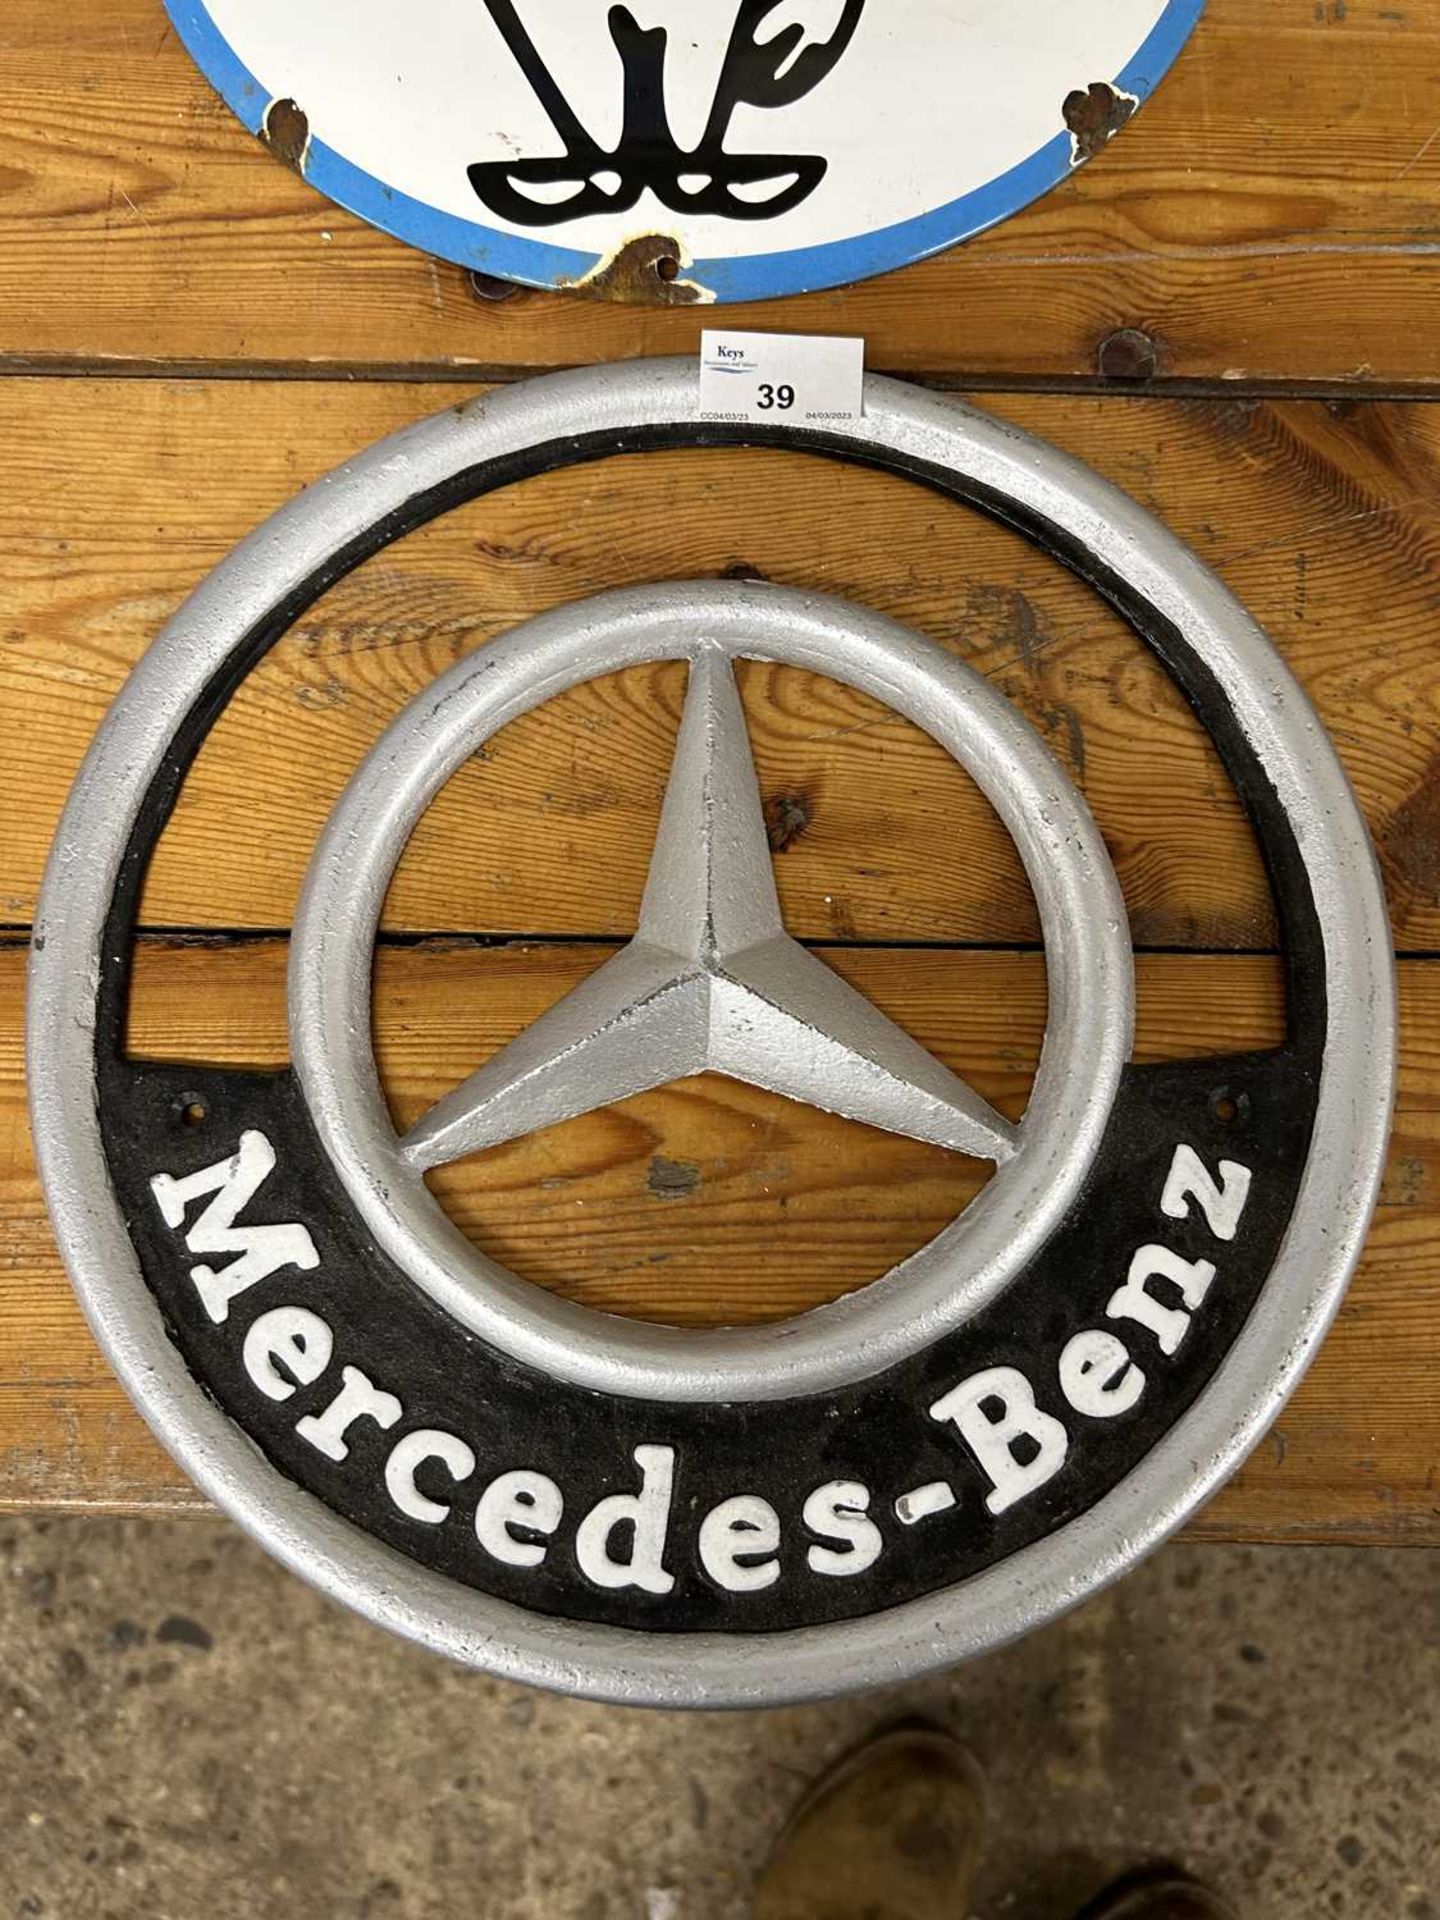 Cast Mercedes Benz sign, width approx 30cm